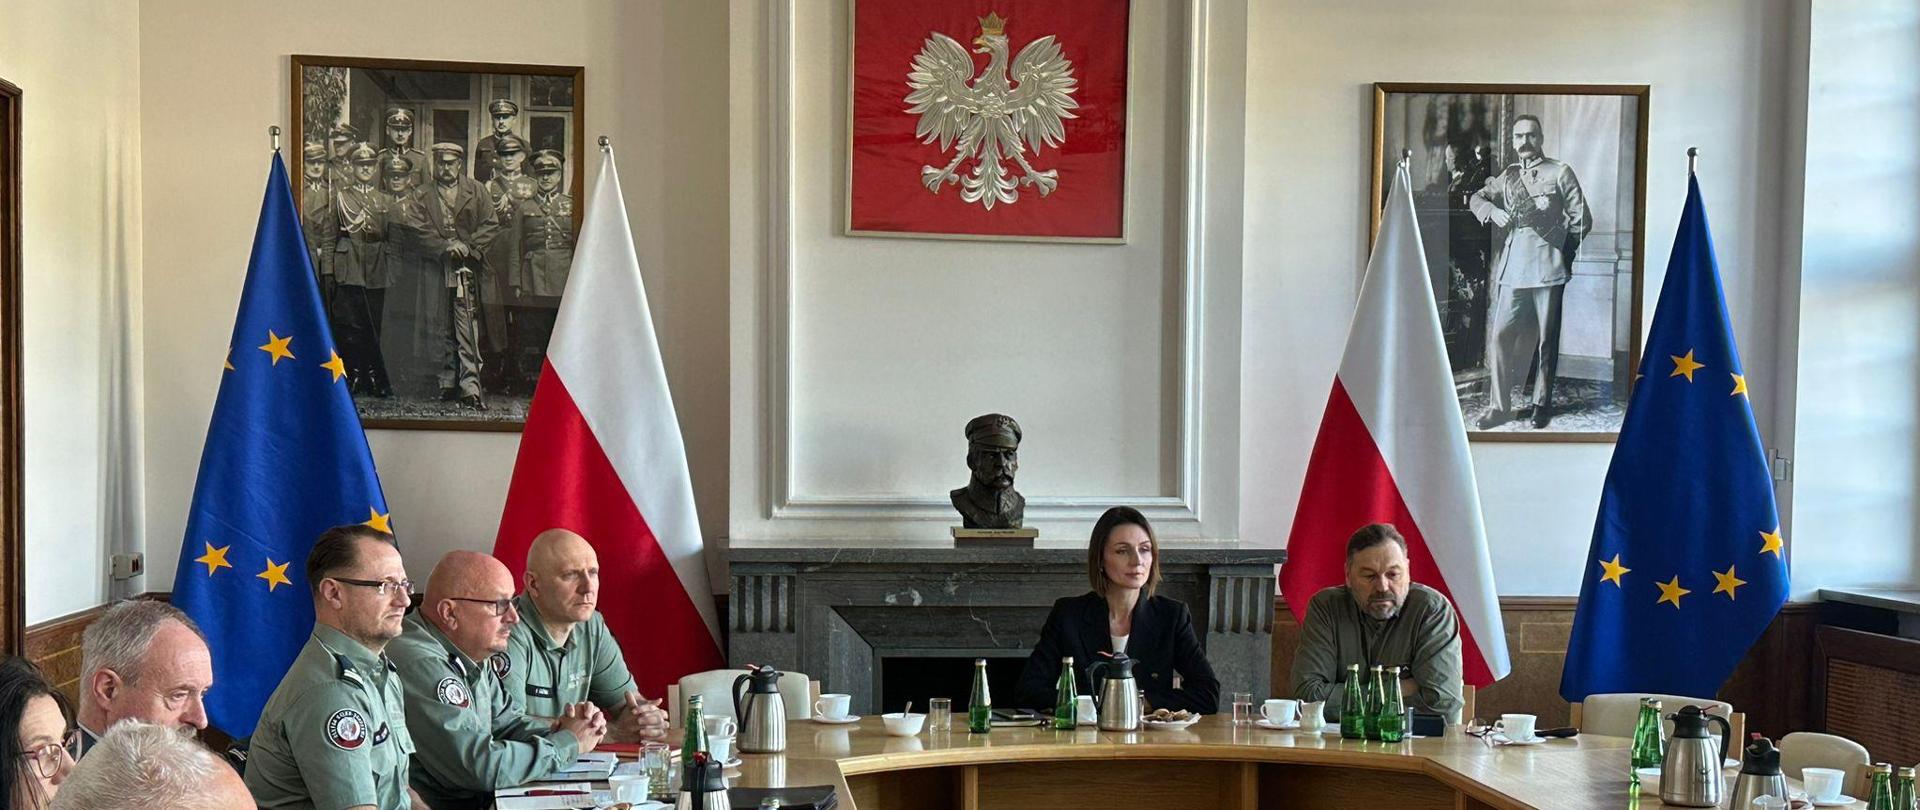 przy okrągłym stole siedzi kilka osób i dyskutuje, na ścianie godło Polski i obrazy przedstawiające marszałka Piłsudskiego